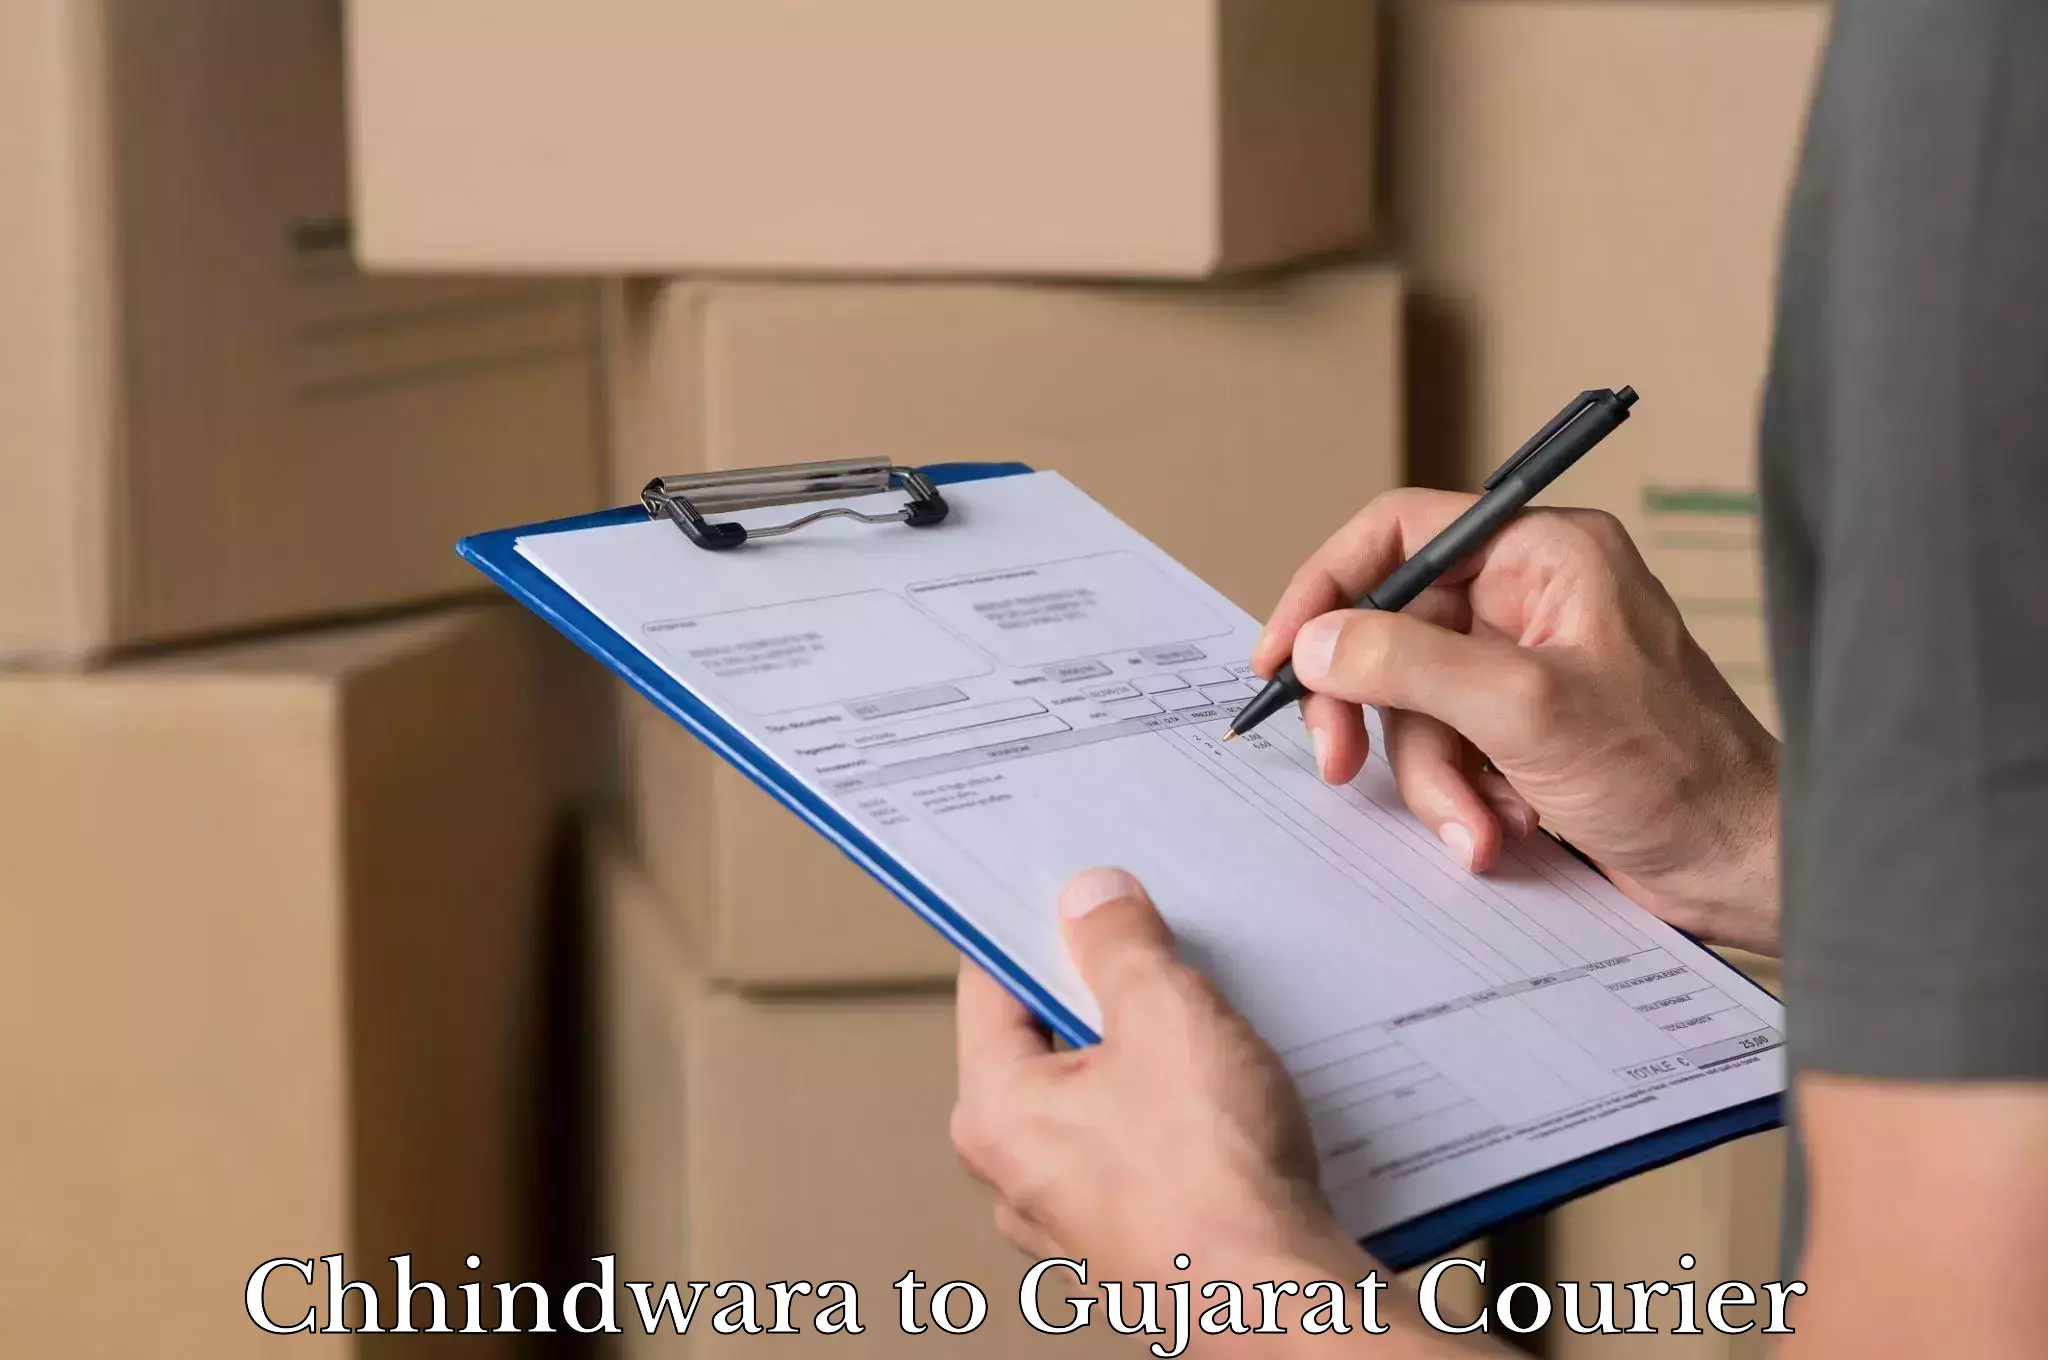 Luggage dispatch service Chhindwara to Gujarat